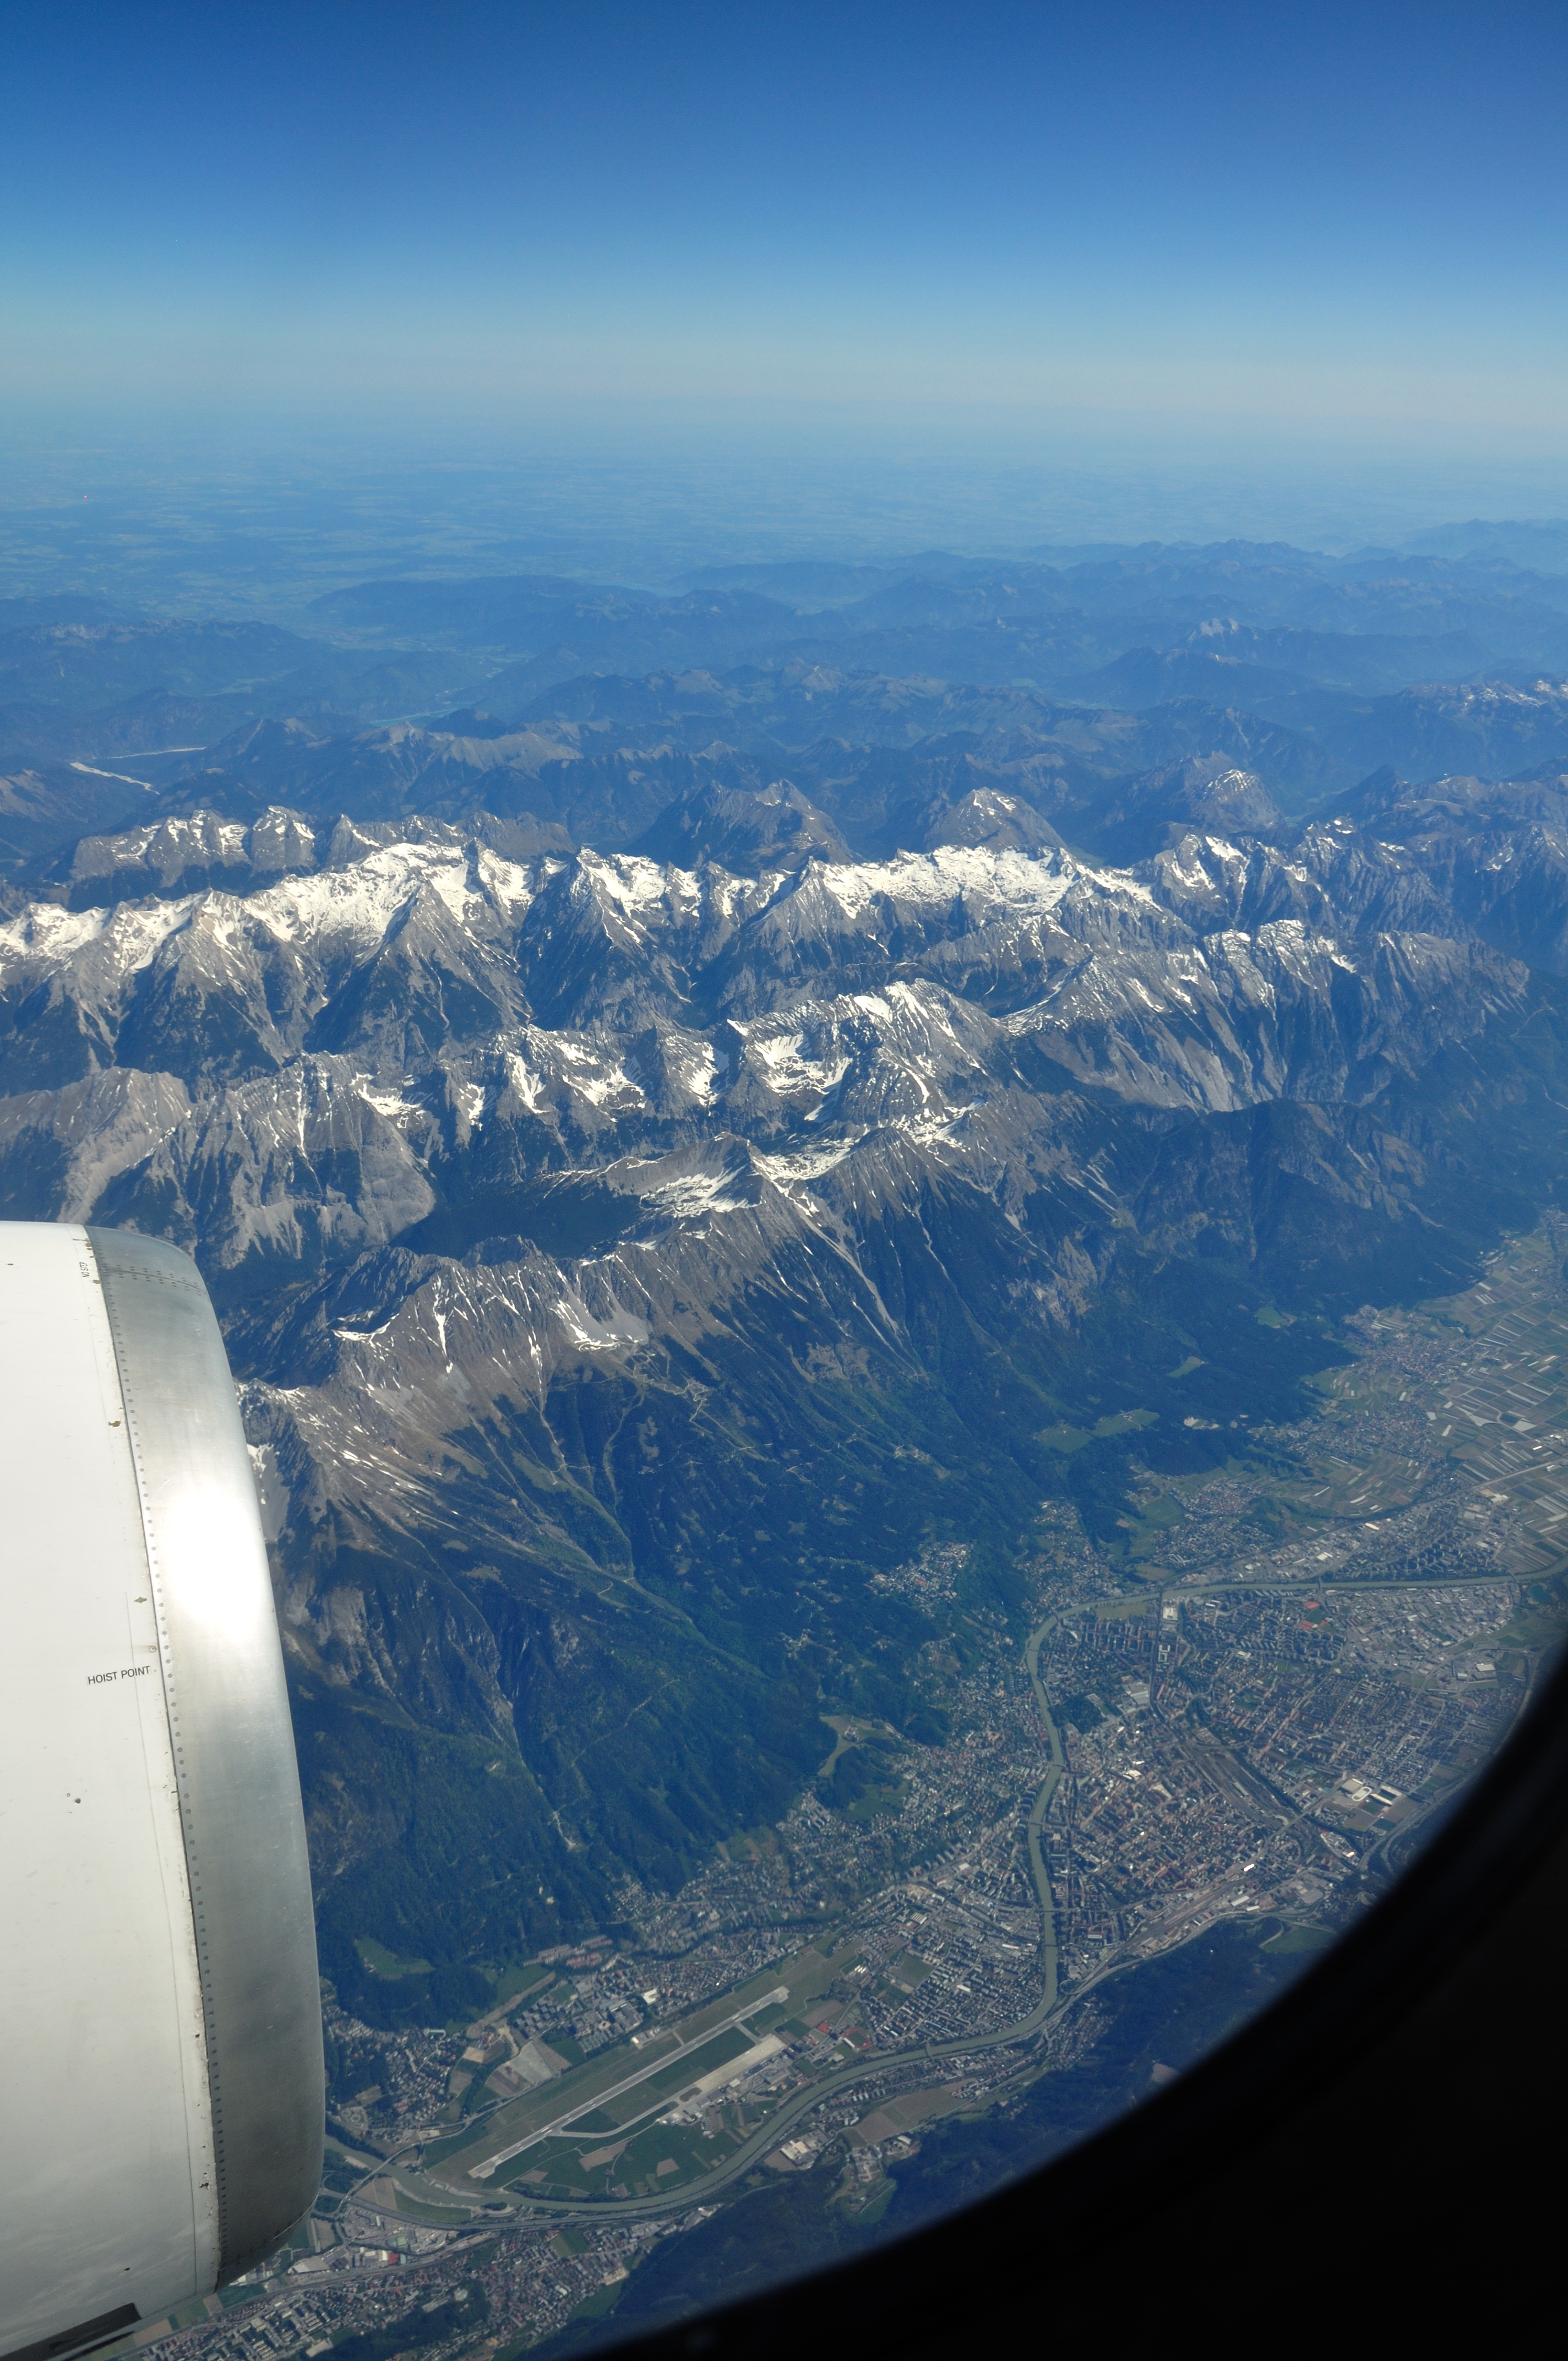 Axamer Lizum from the air, Tirol, Austria in 2011